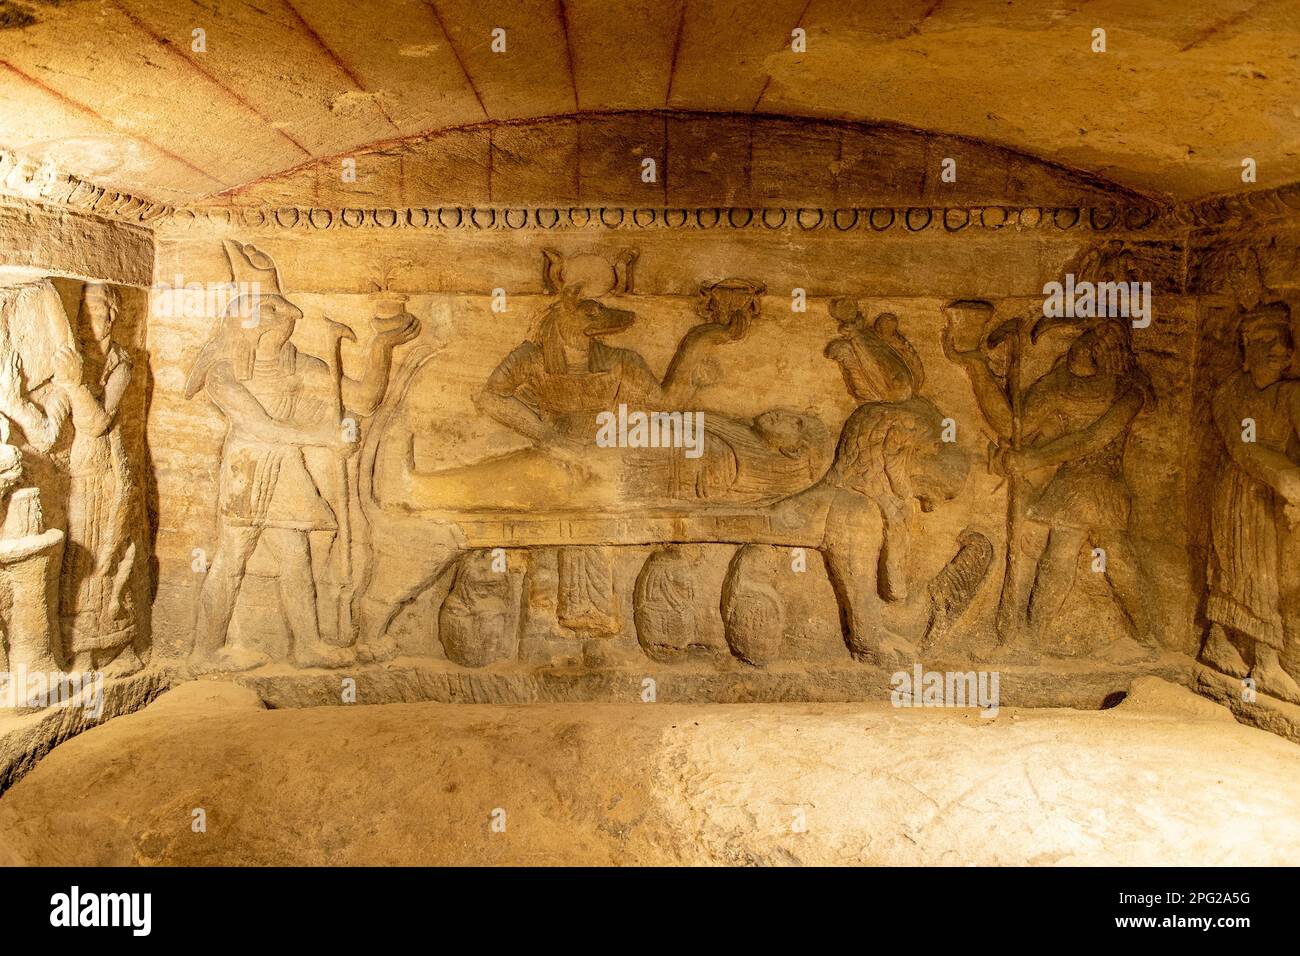 Inside Catacombs of Kom el Shuqafa, Alexandria, Egypt Stock Photo